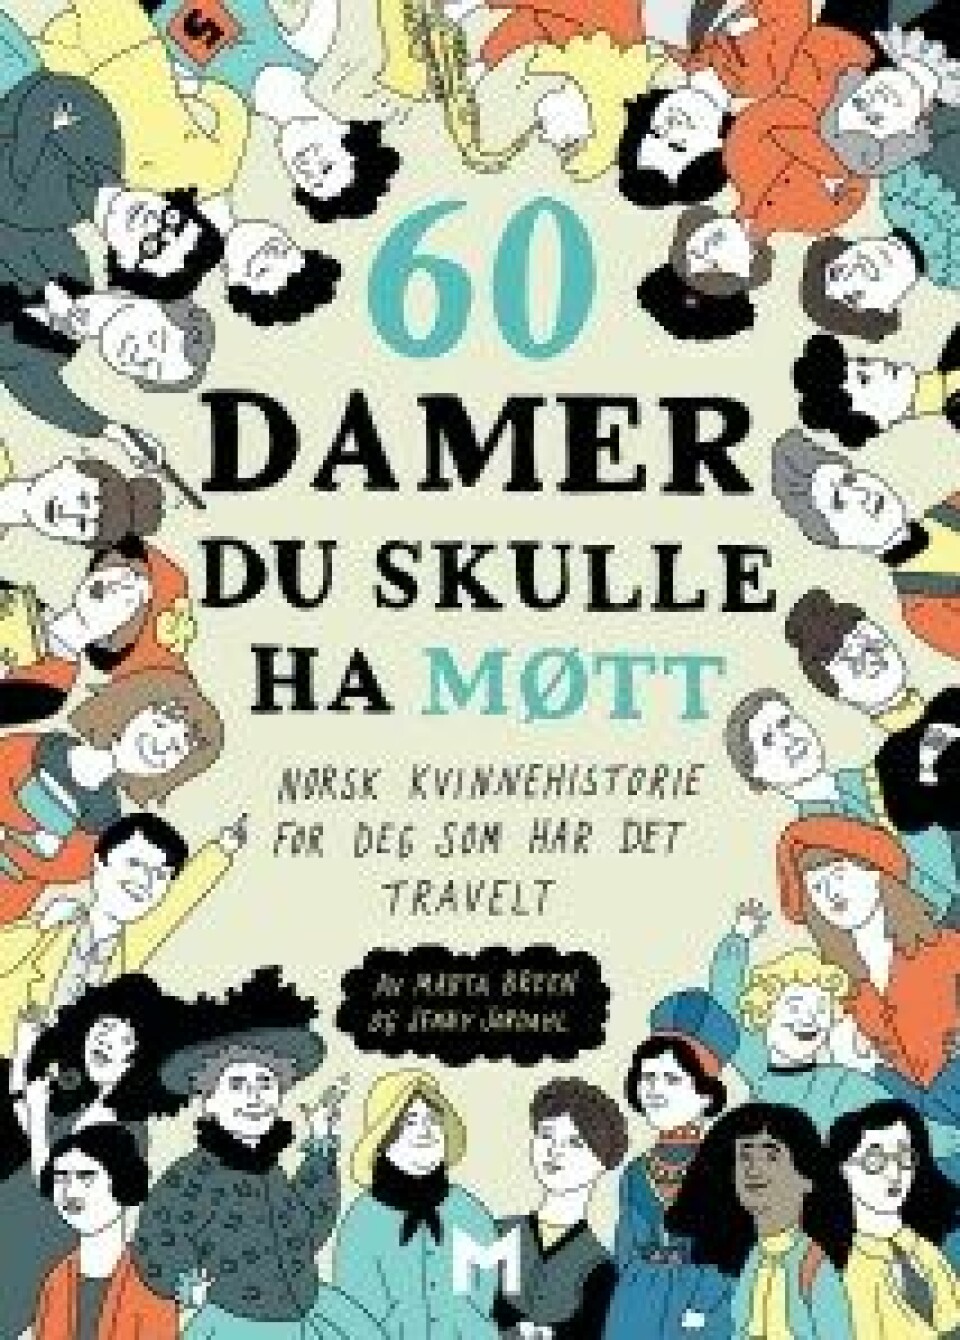 60 damer du skulle ha møtt. Norsk kvinnehistorie for deg som har det travelt av Marta Breen og Jenny Jordal, Forlaget Manifest, 2016.